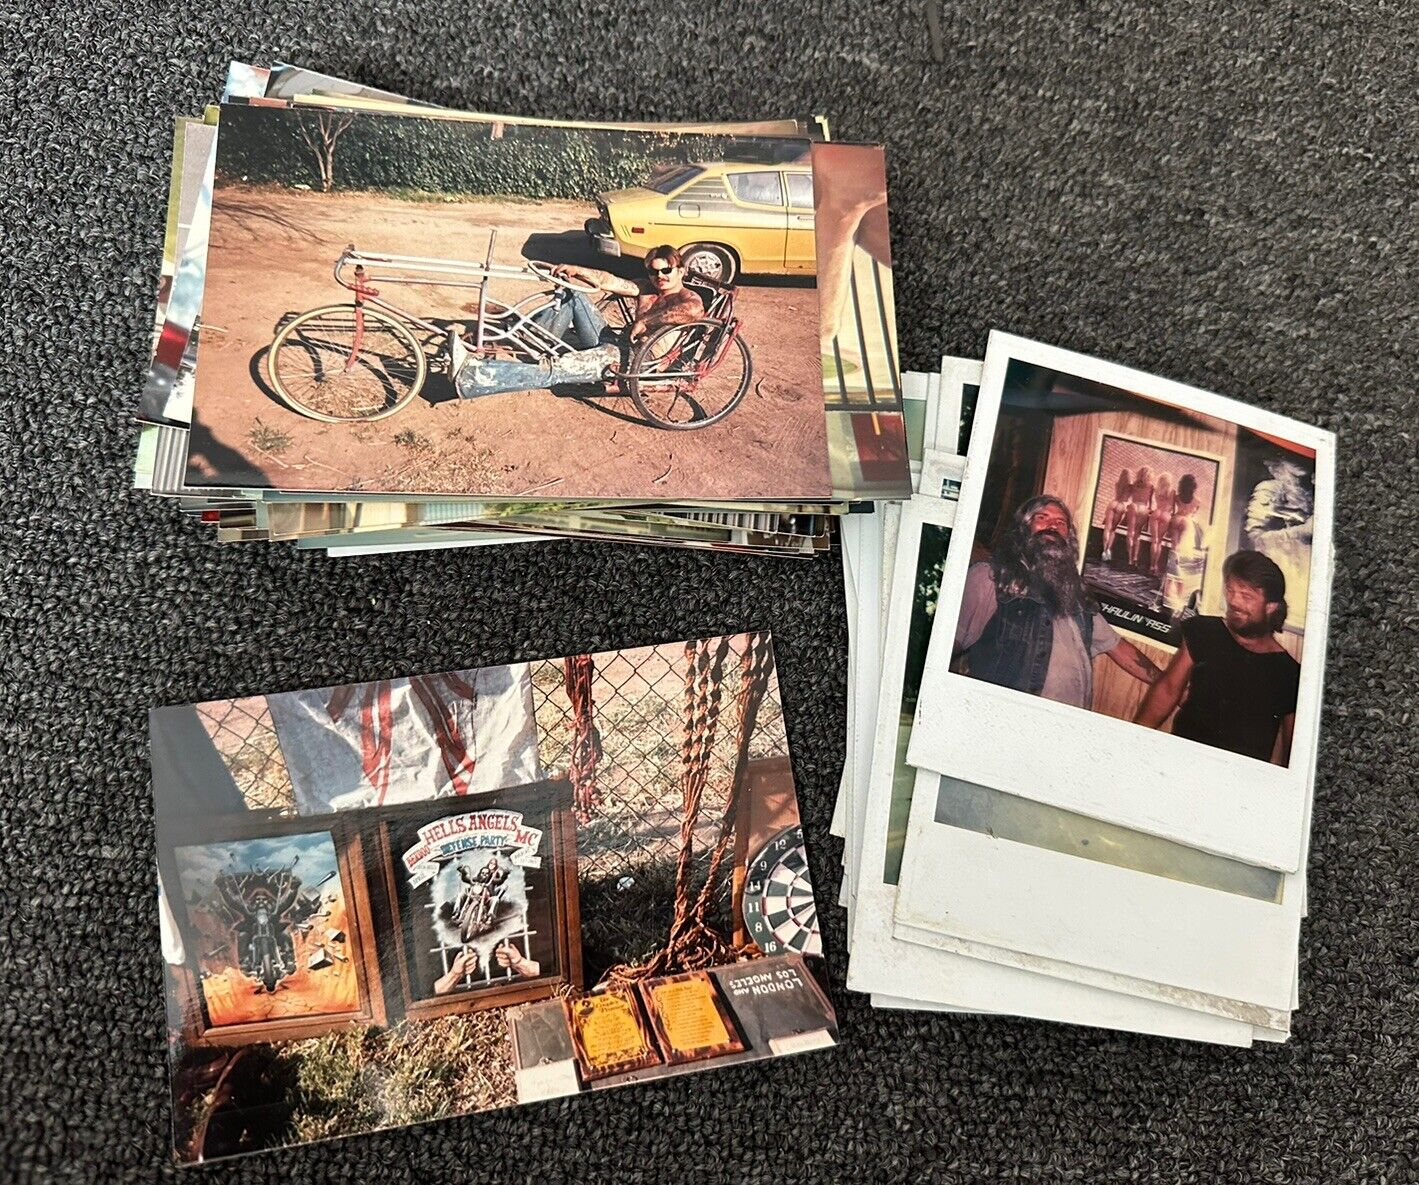 1980s outlaw biker mc lot Snapshot 74+ photos Polaroid chopper bike ha rare club